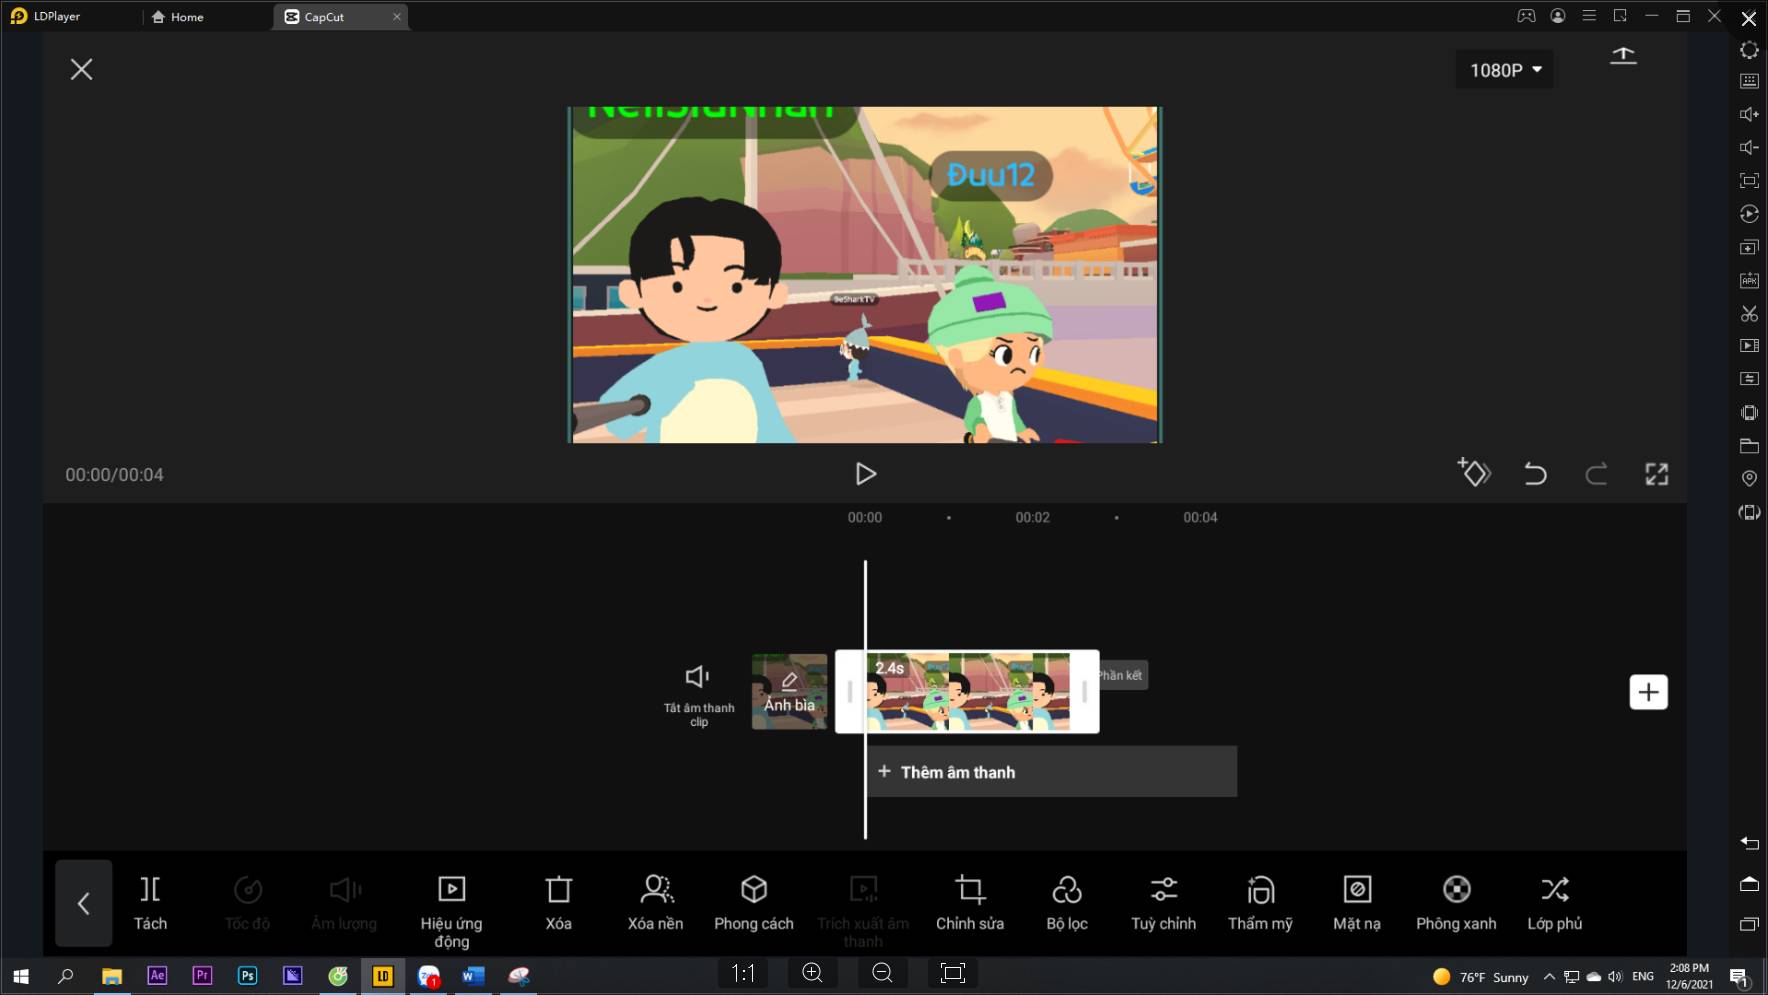 Hướng dẫn tải app CapCut edit video trên Pc với LD Player và tìm video đã xuất ra ở trong giả lập